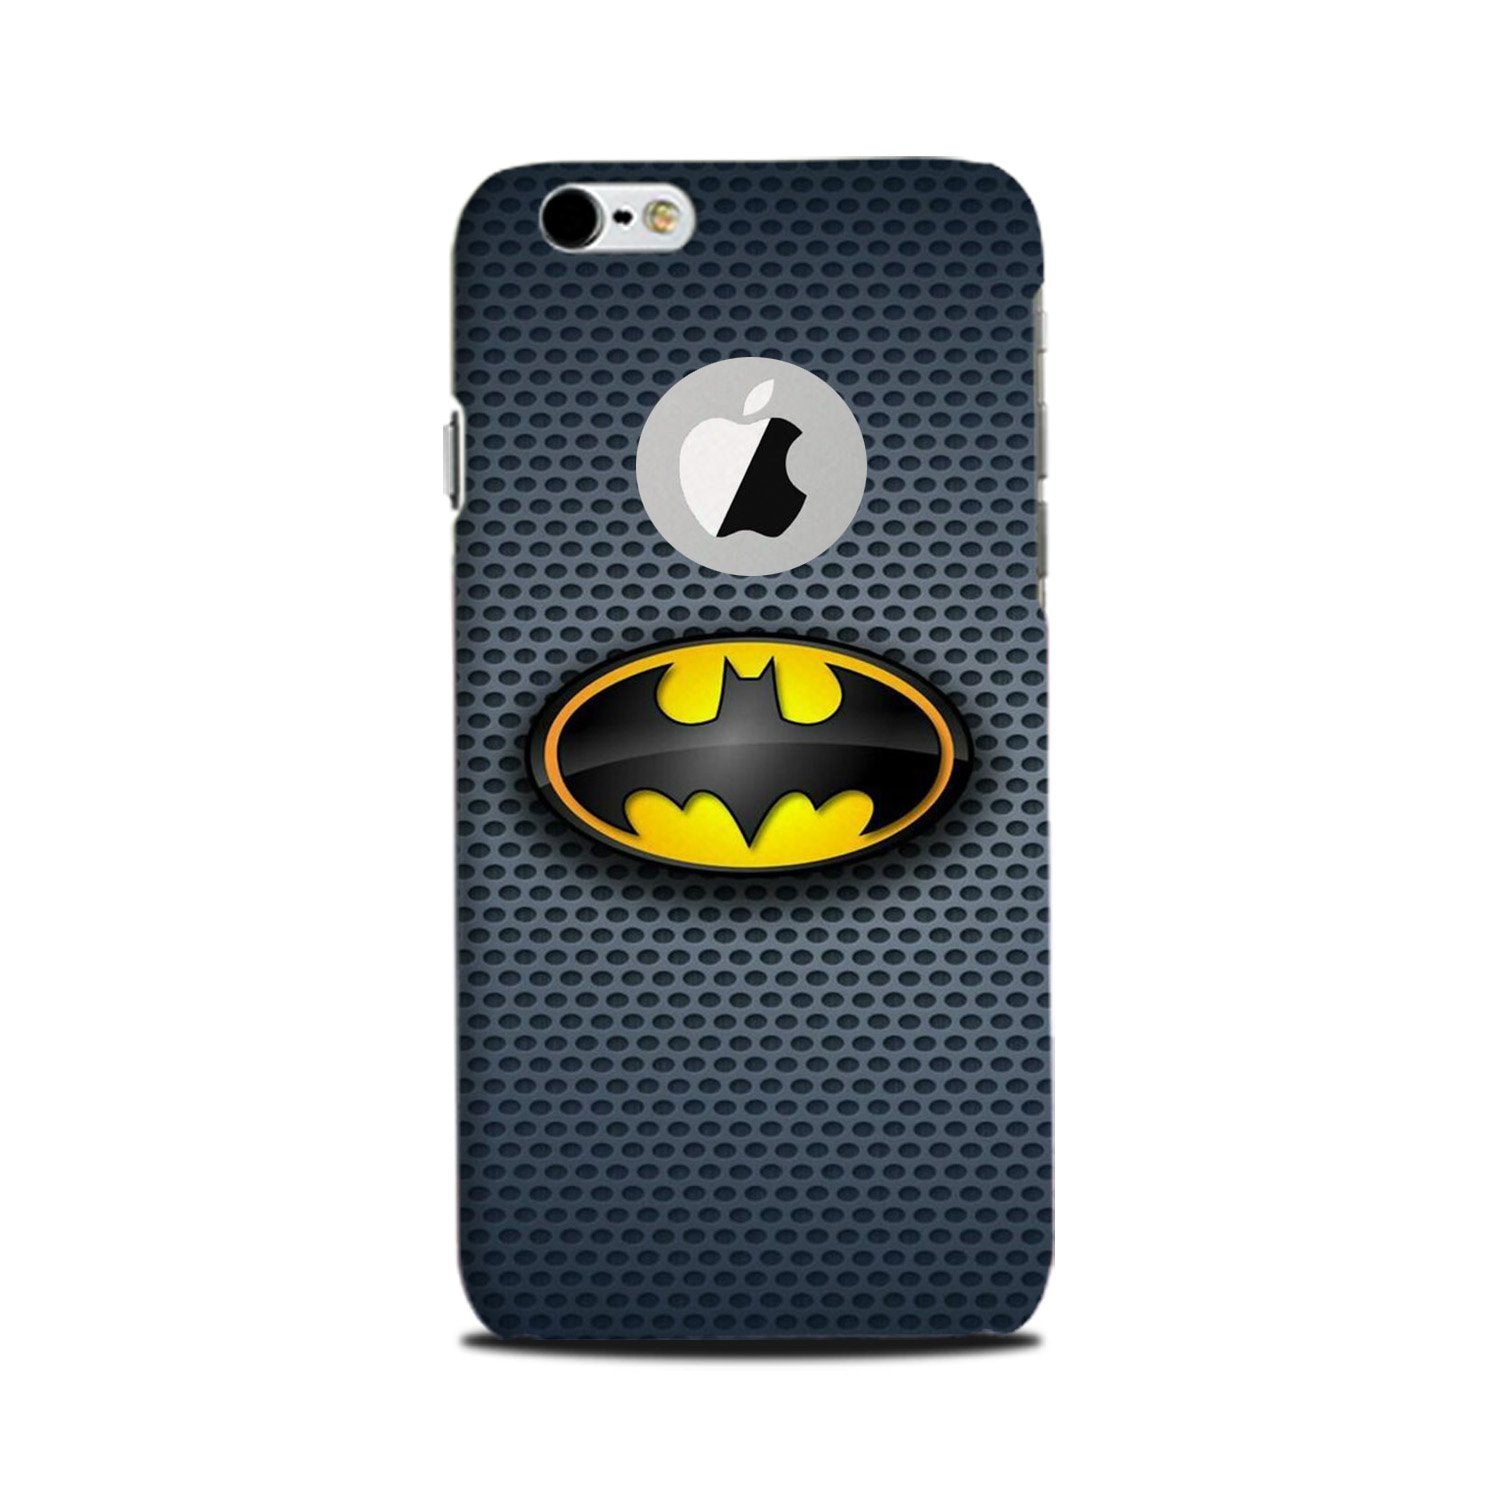 Batman Case for iPhone 6 Plus / 6s Plus logo cut  (Design No. 244)